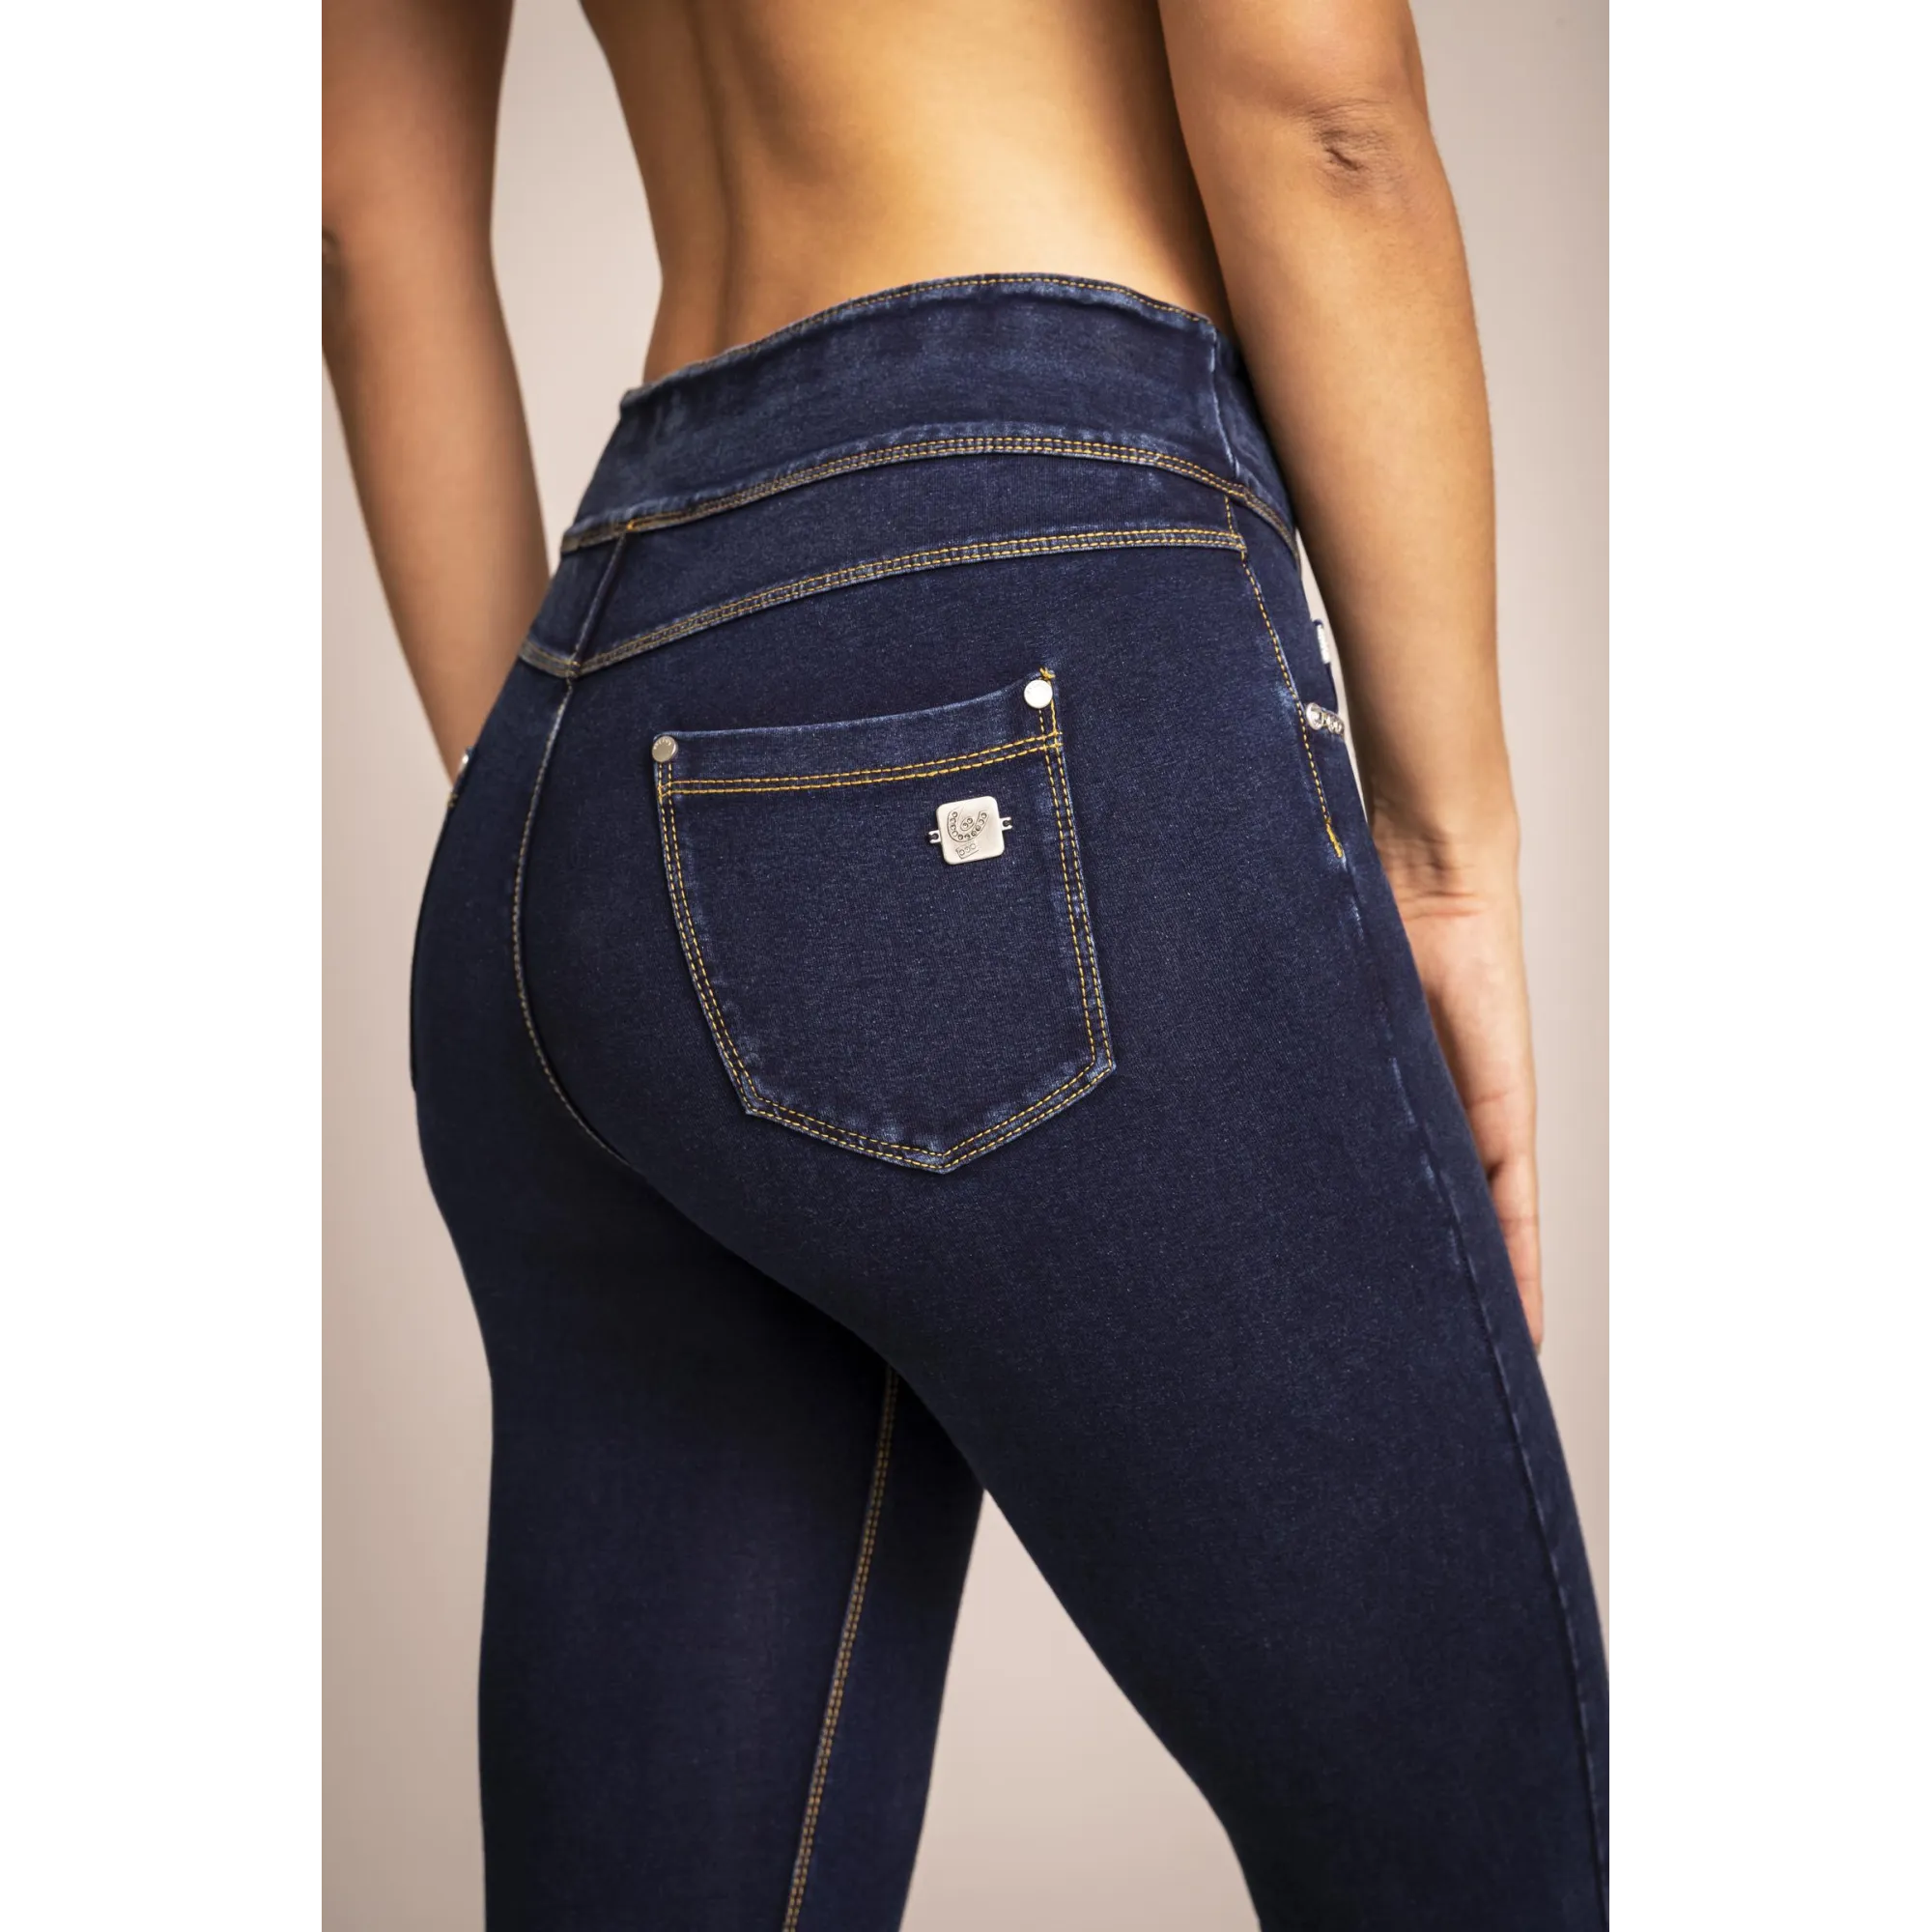 N.O.W.® Yoga - Spodnie Skinny z podwijanym pasem w kolorze niebieskim